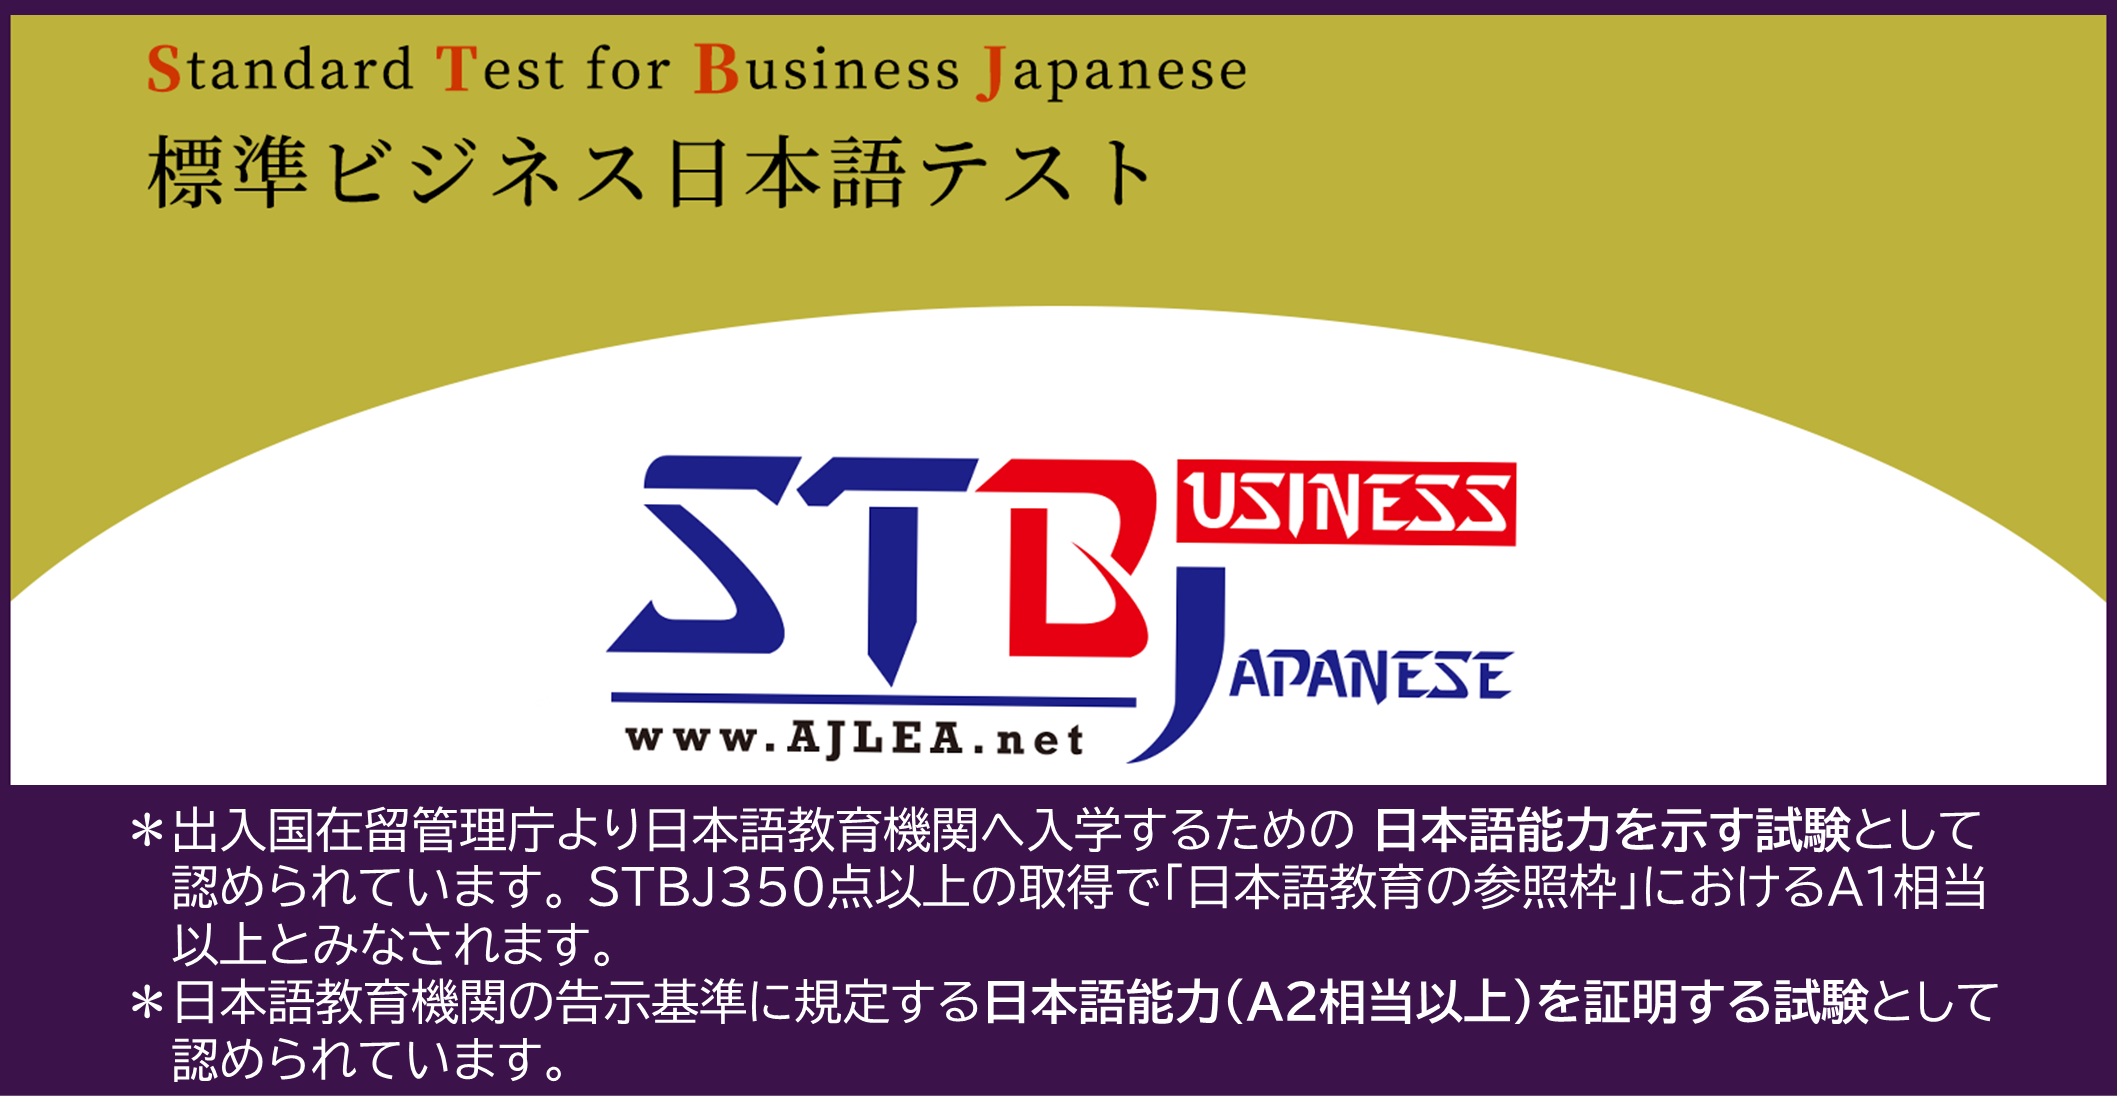 一般社団法人 応用日本語教育協会 Stbj 標準ビジネス日本語テスト